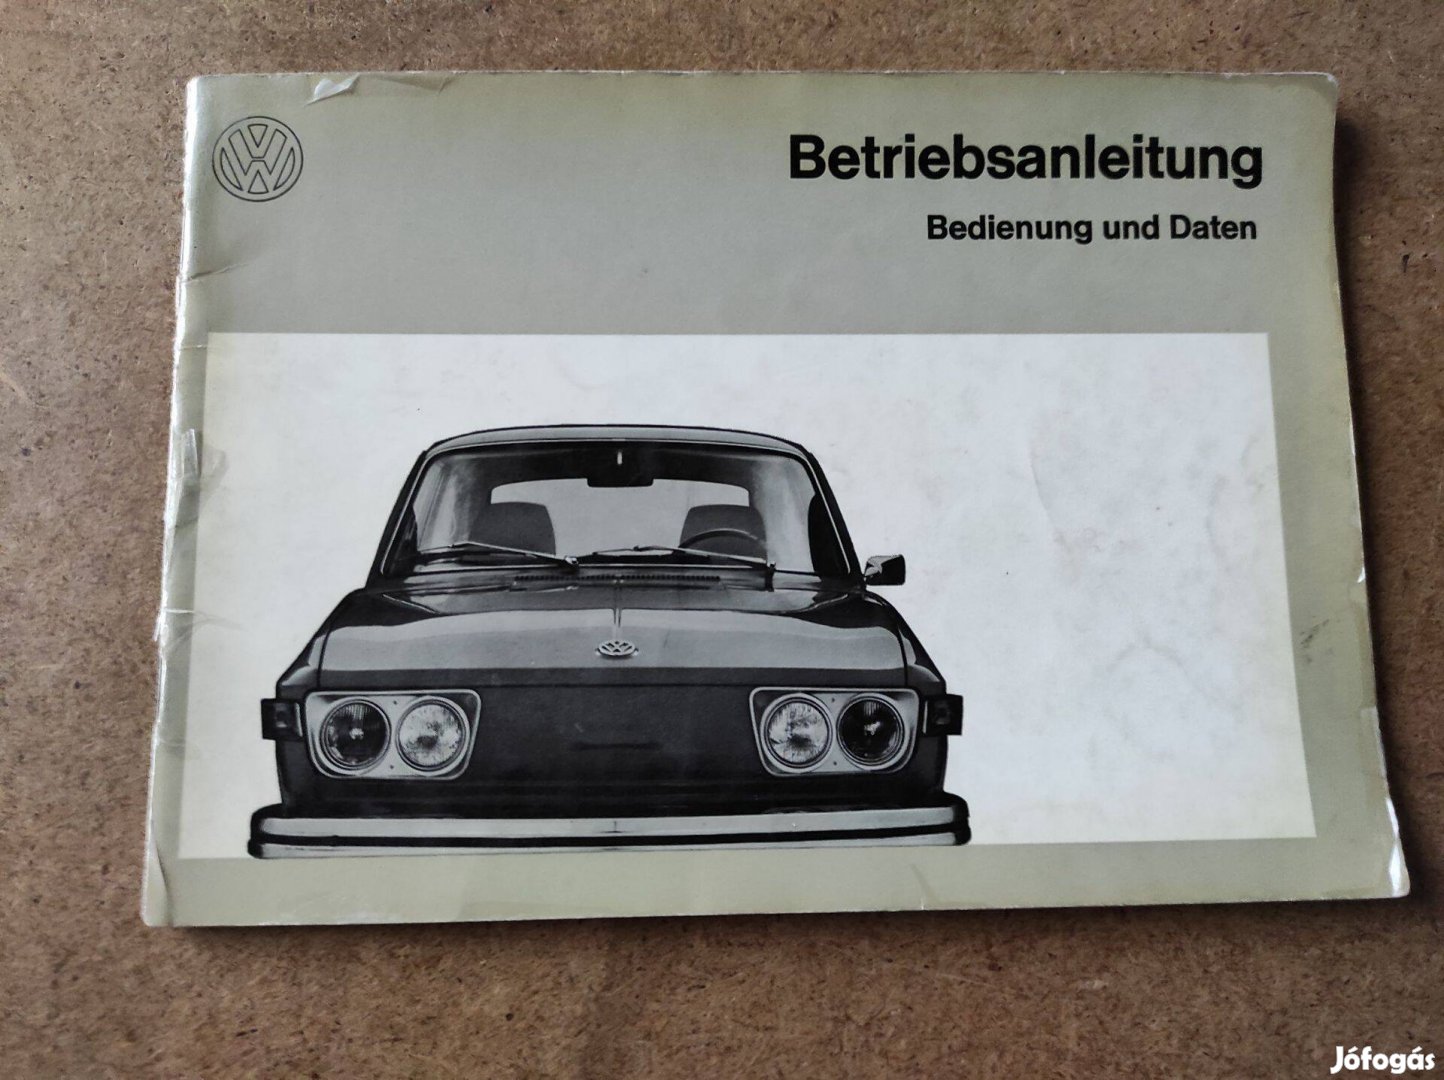 Volkswagen Vw. 412 E kezelési üzemeltetési utasítás 1972